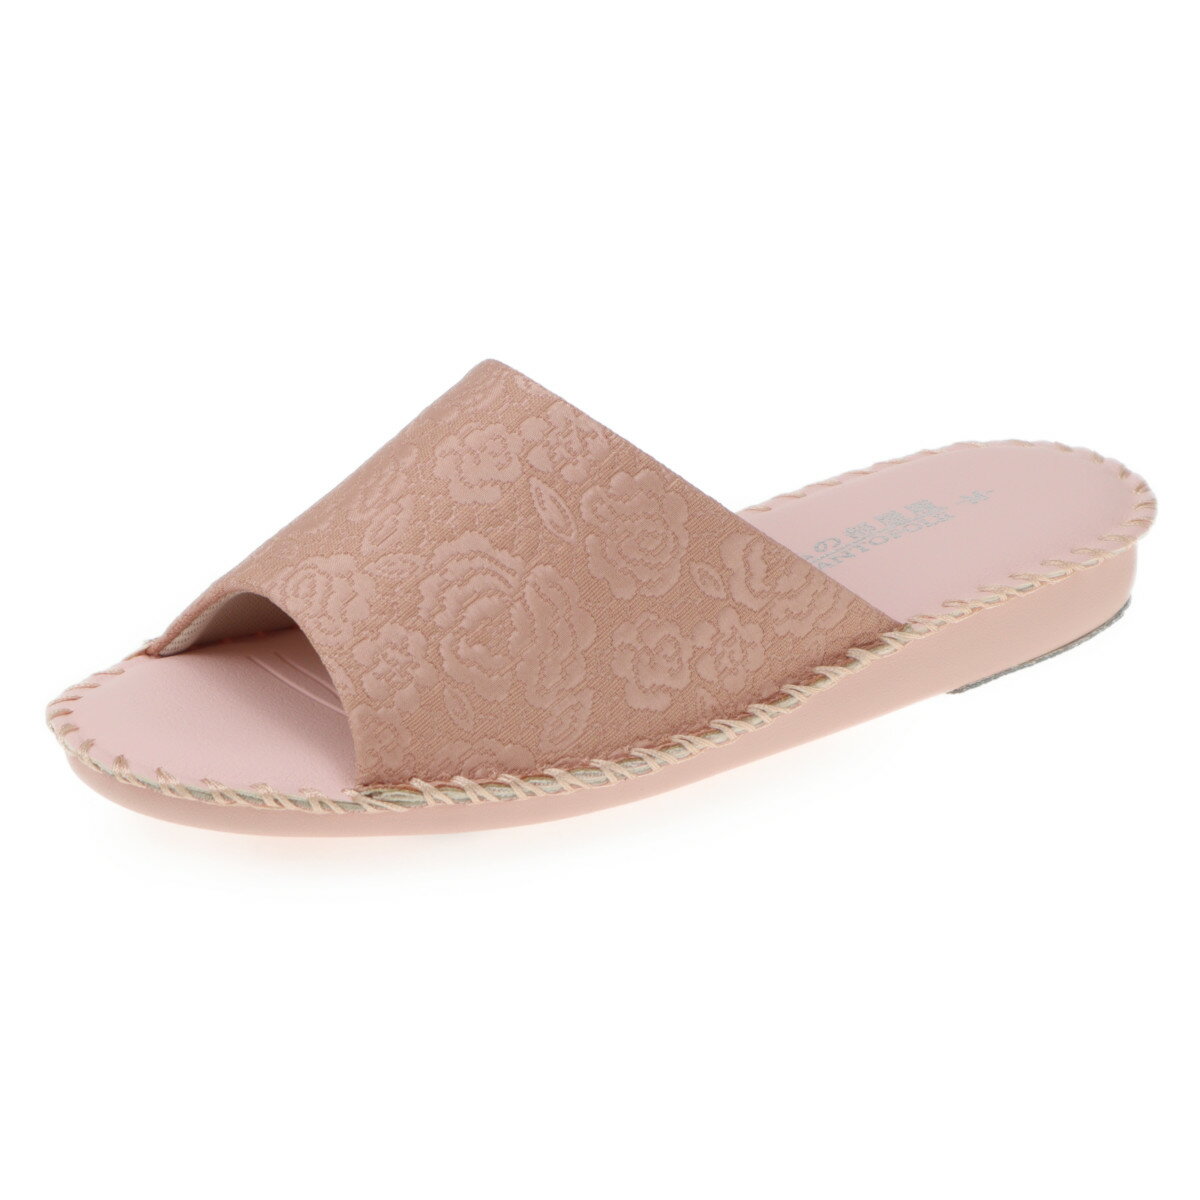 pansy パンジー レディースサンダル 女性用 婦人用 スリッパ ルームシューズ 靴 花柄 室内履き 部屋履き 8691 ピンク